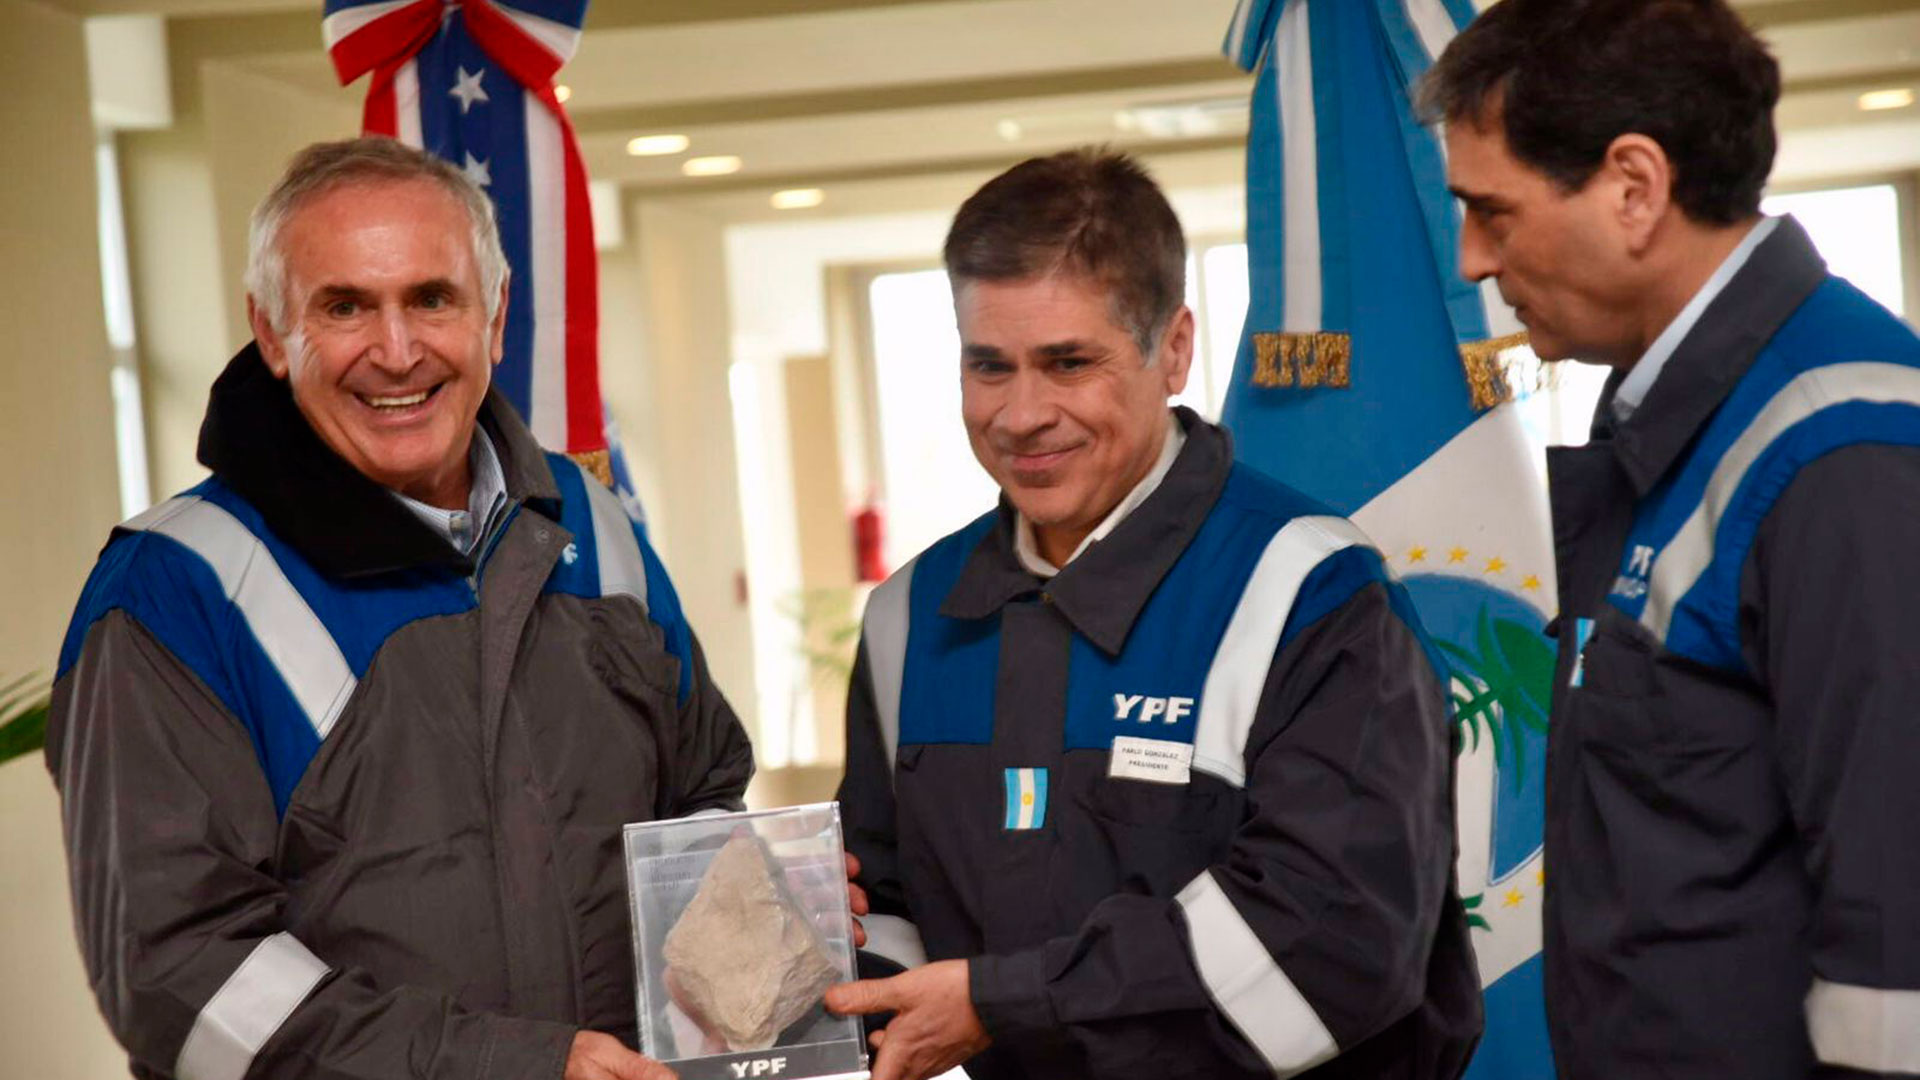 El presidente de YPF, Pablo González, agradeció al embajador la visita